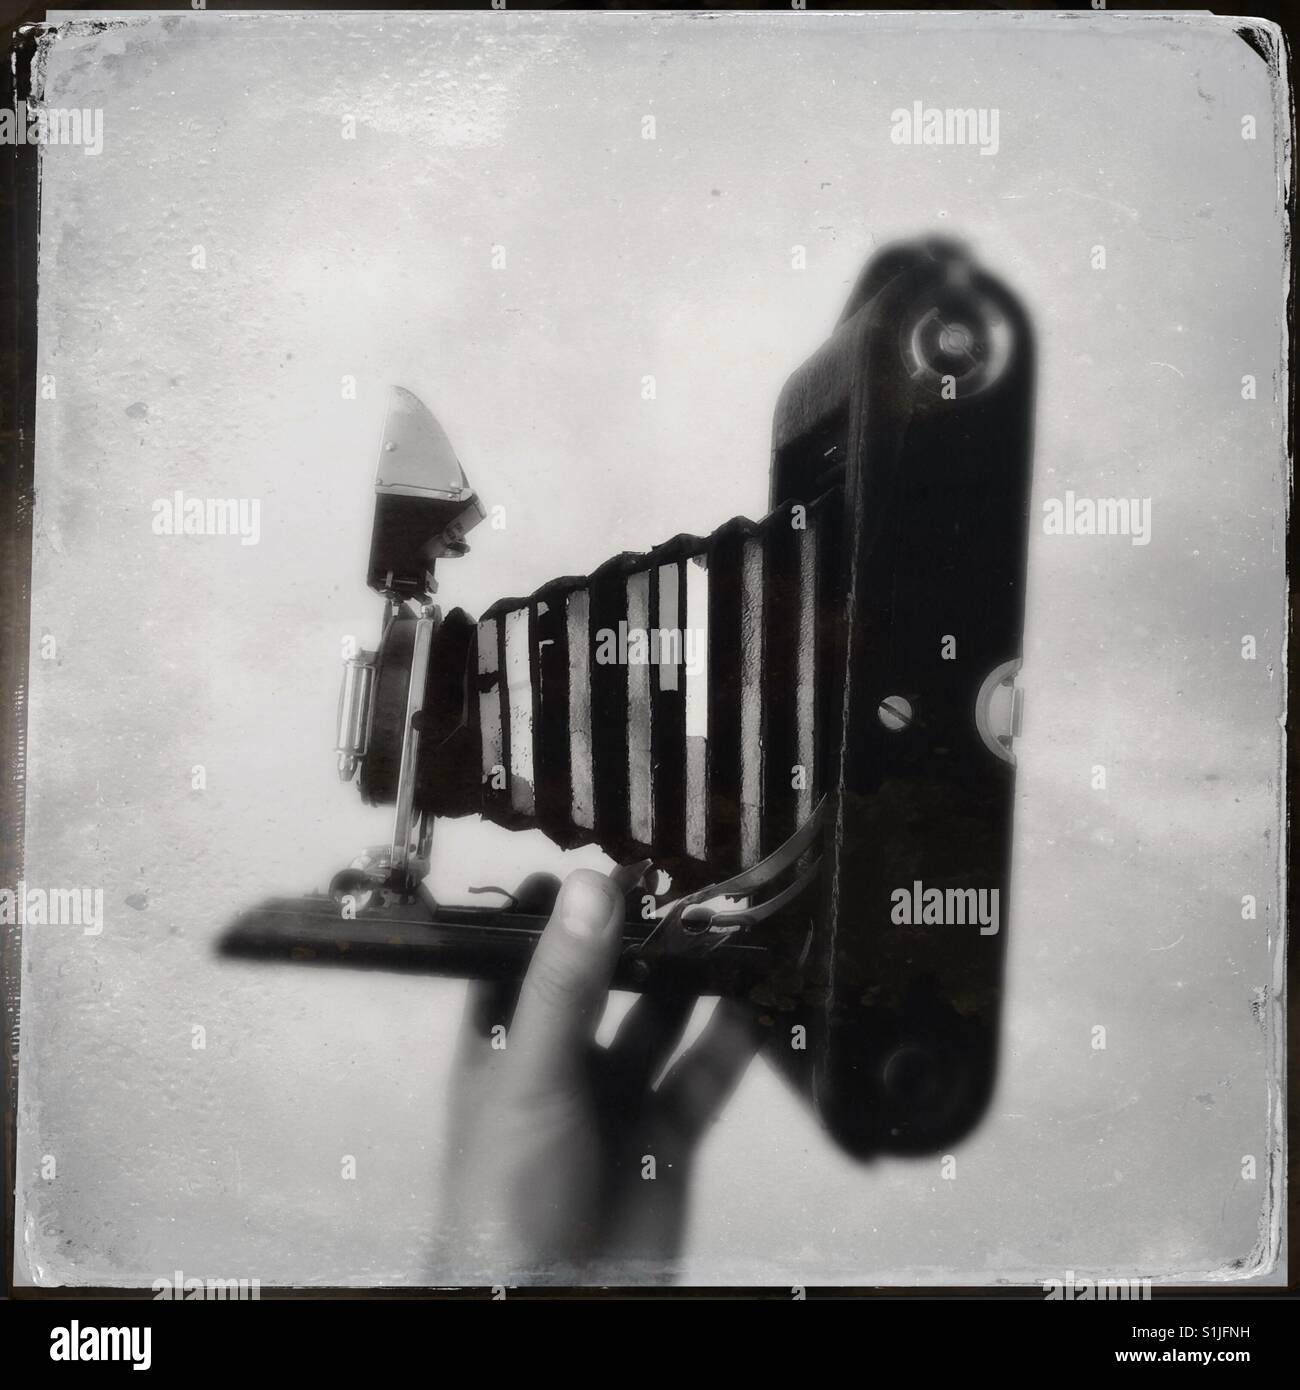 Immagine di un Vintage fotocamera da 1920's image modificati per dare immagine tintype guarda che era una tradizionale tecnica di imaging che è noto anche come piastra umida o processo di collodio Foto Stock